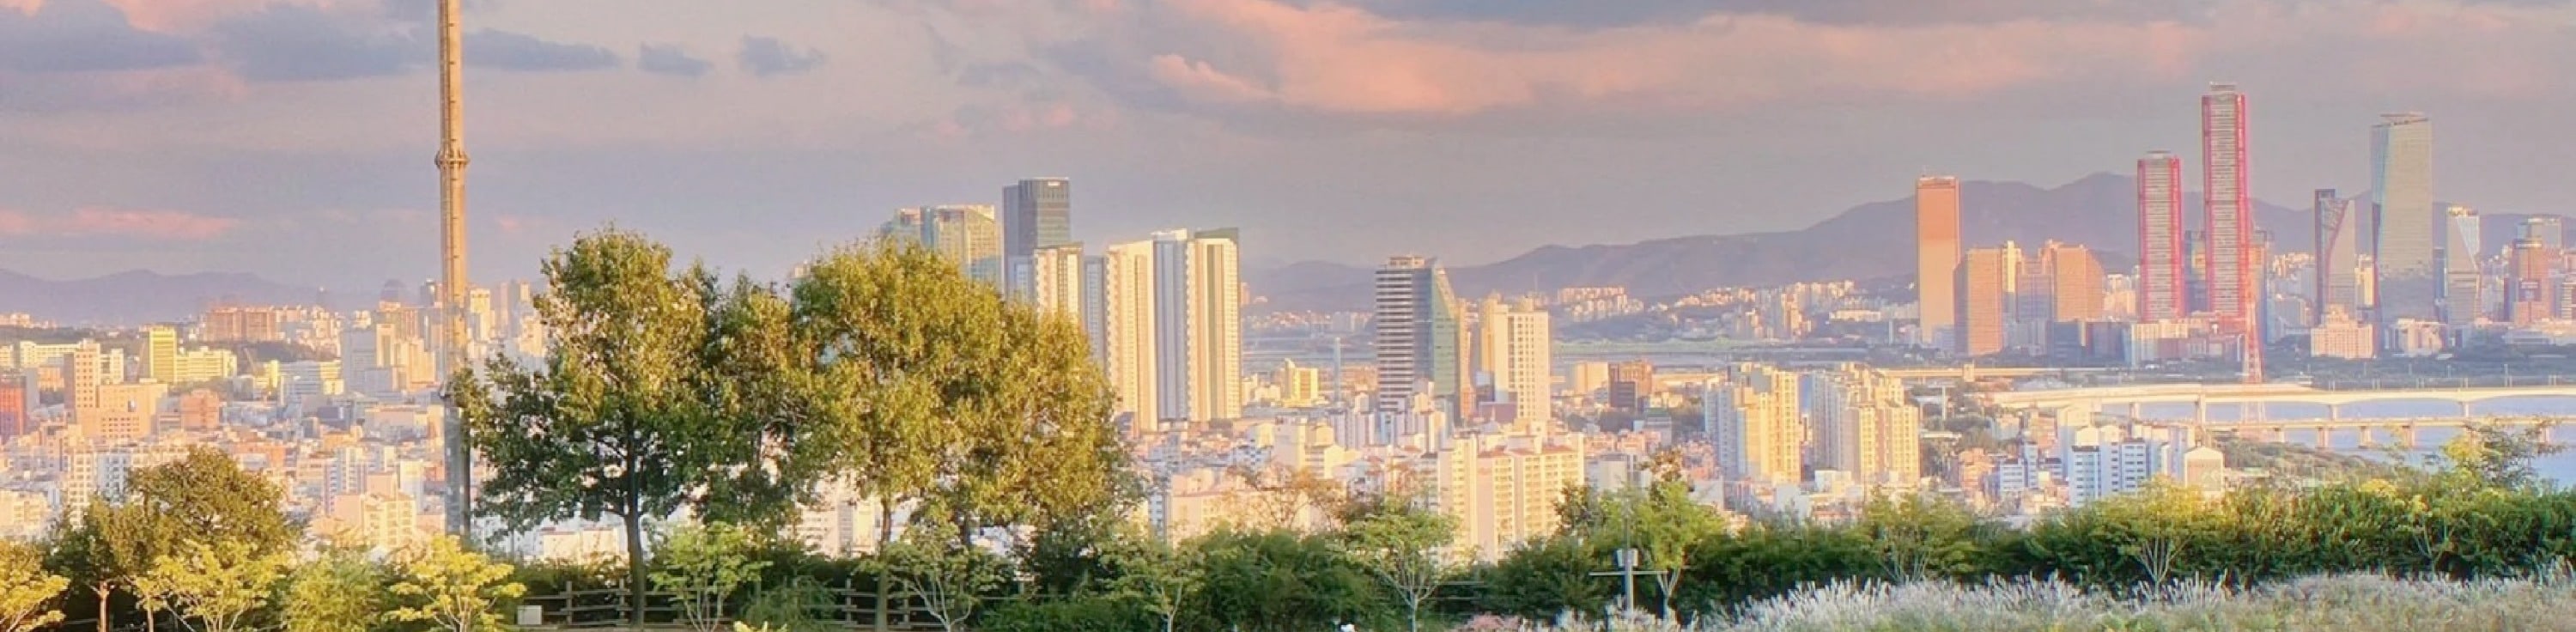 首爾市 & 季節性熱門景點一日遊